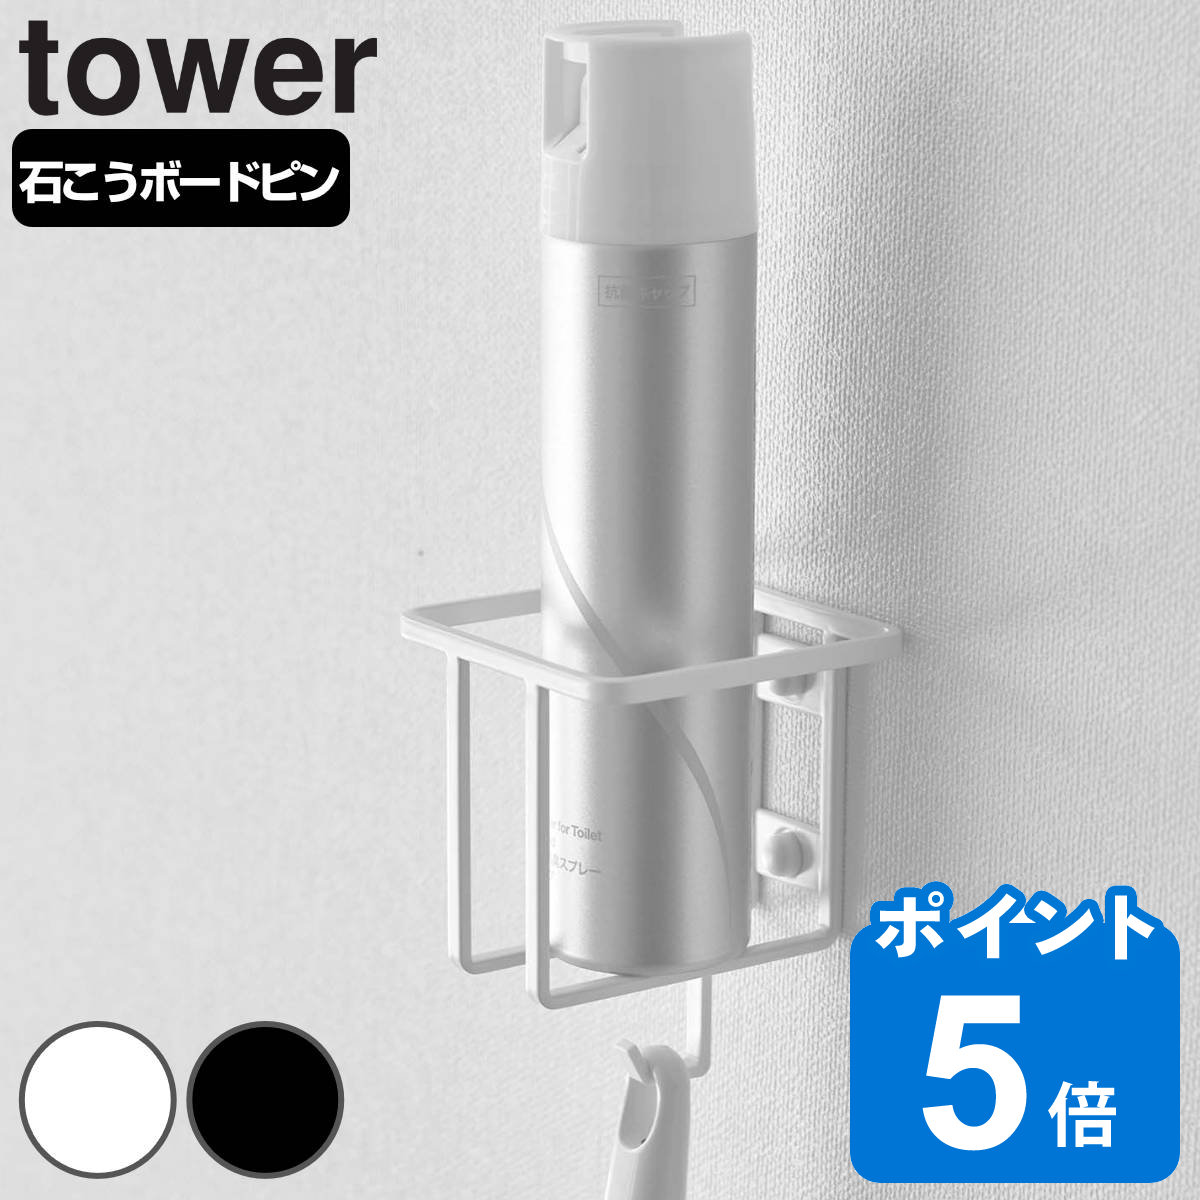 山崎実業 tower ウォールスプレーボトルホルダー タワー